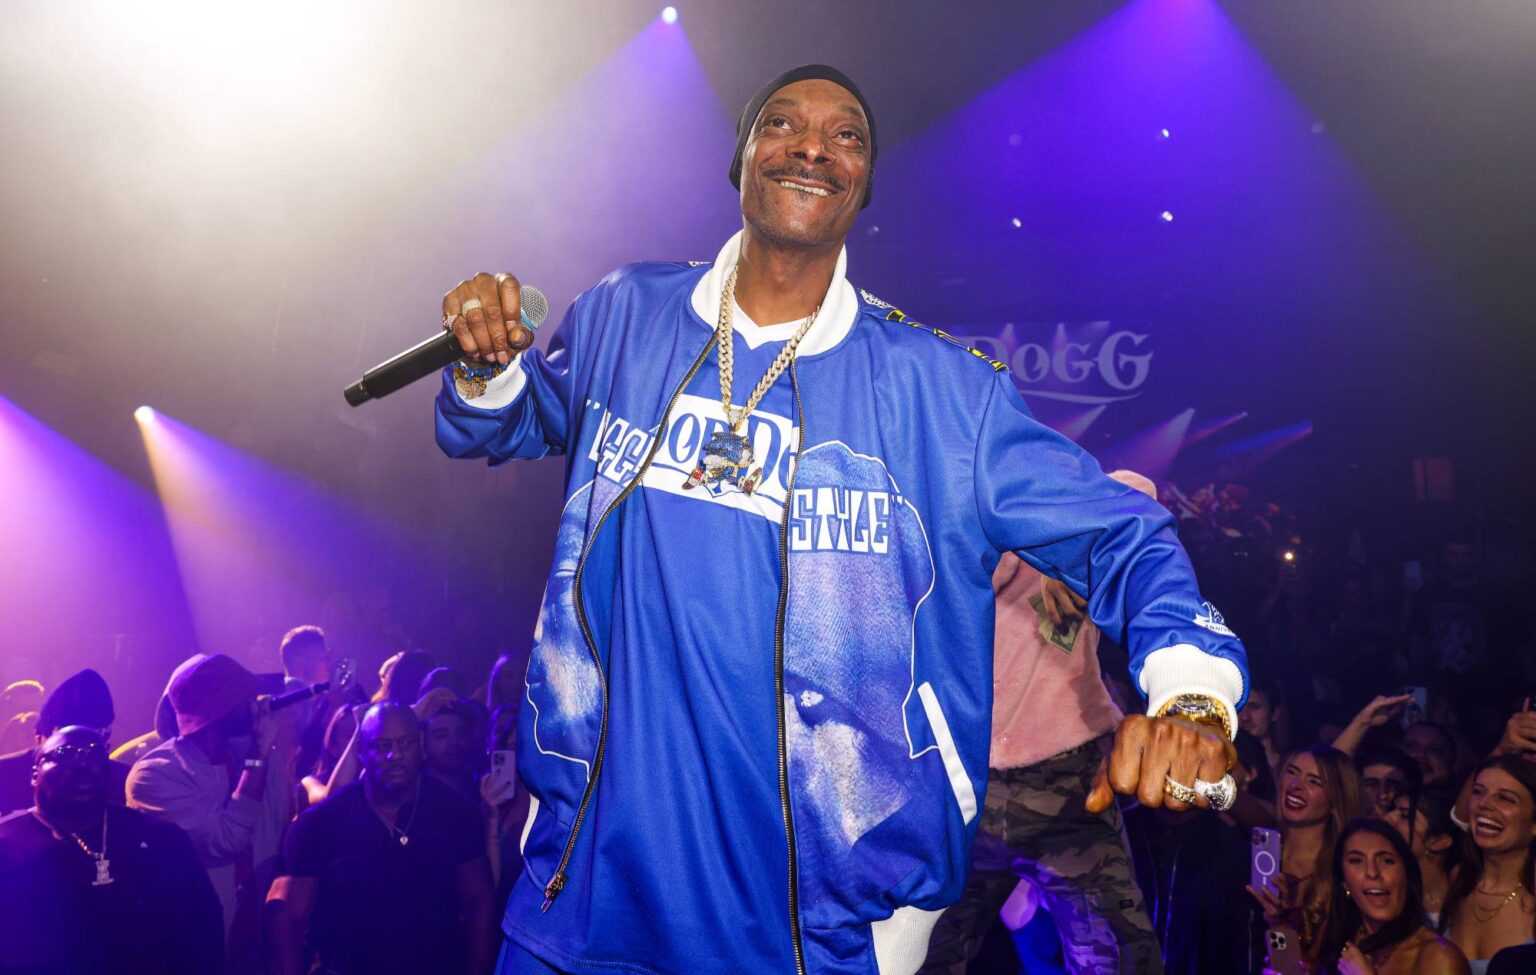 CEO demitido depois que a campanha viral de Snoop Dogg "deixando de fumar" "não levou ao aumento de vendas planejado" para a marca